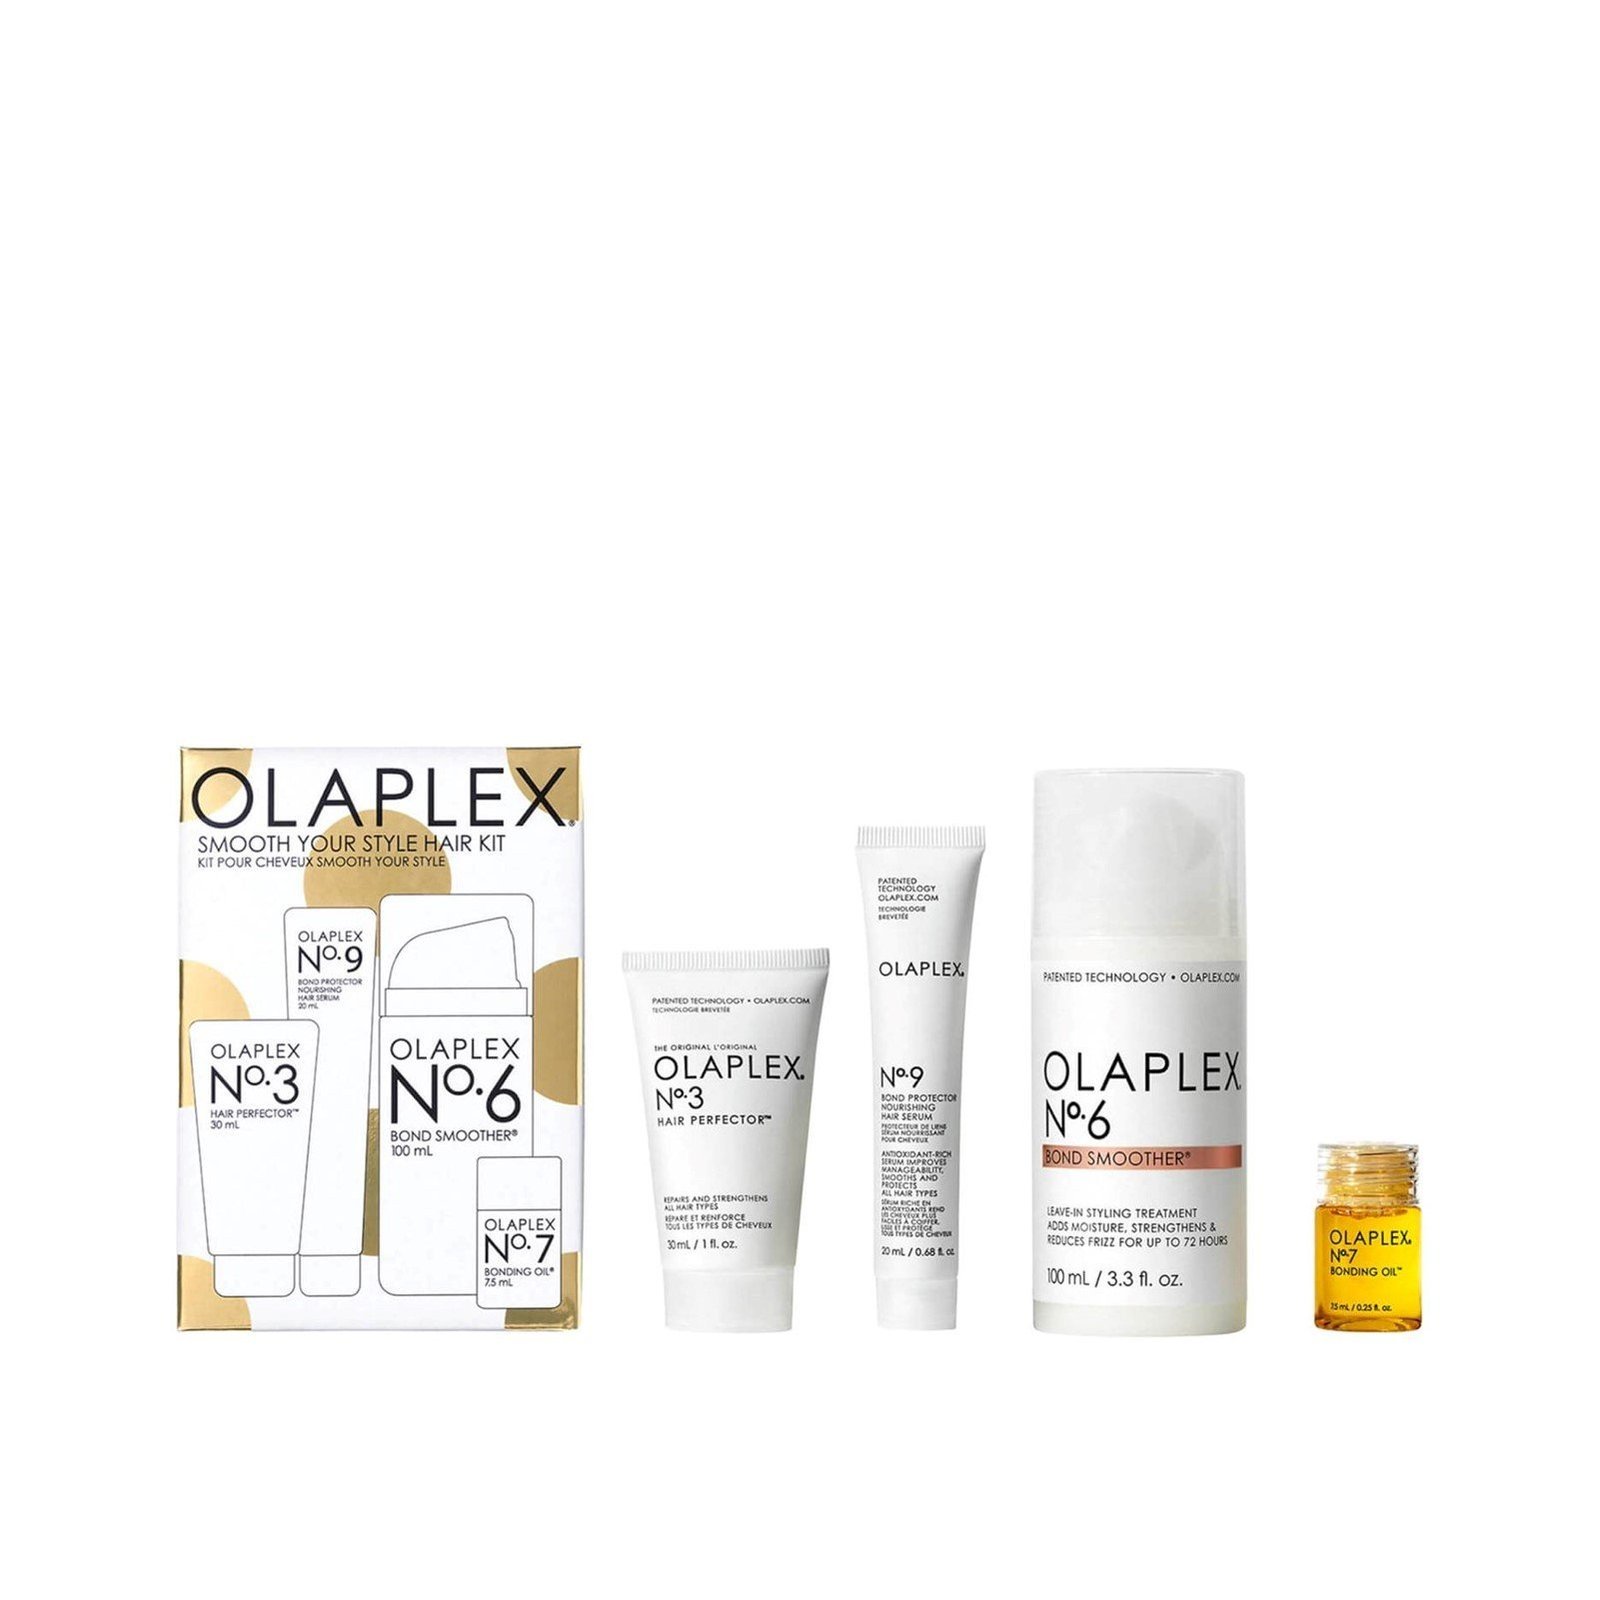 OLAPLEX Smooth Your Style Hair Kit